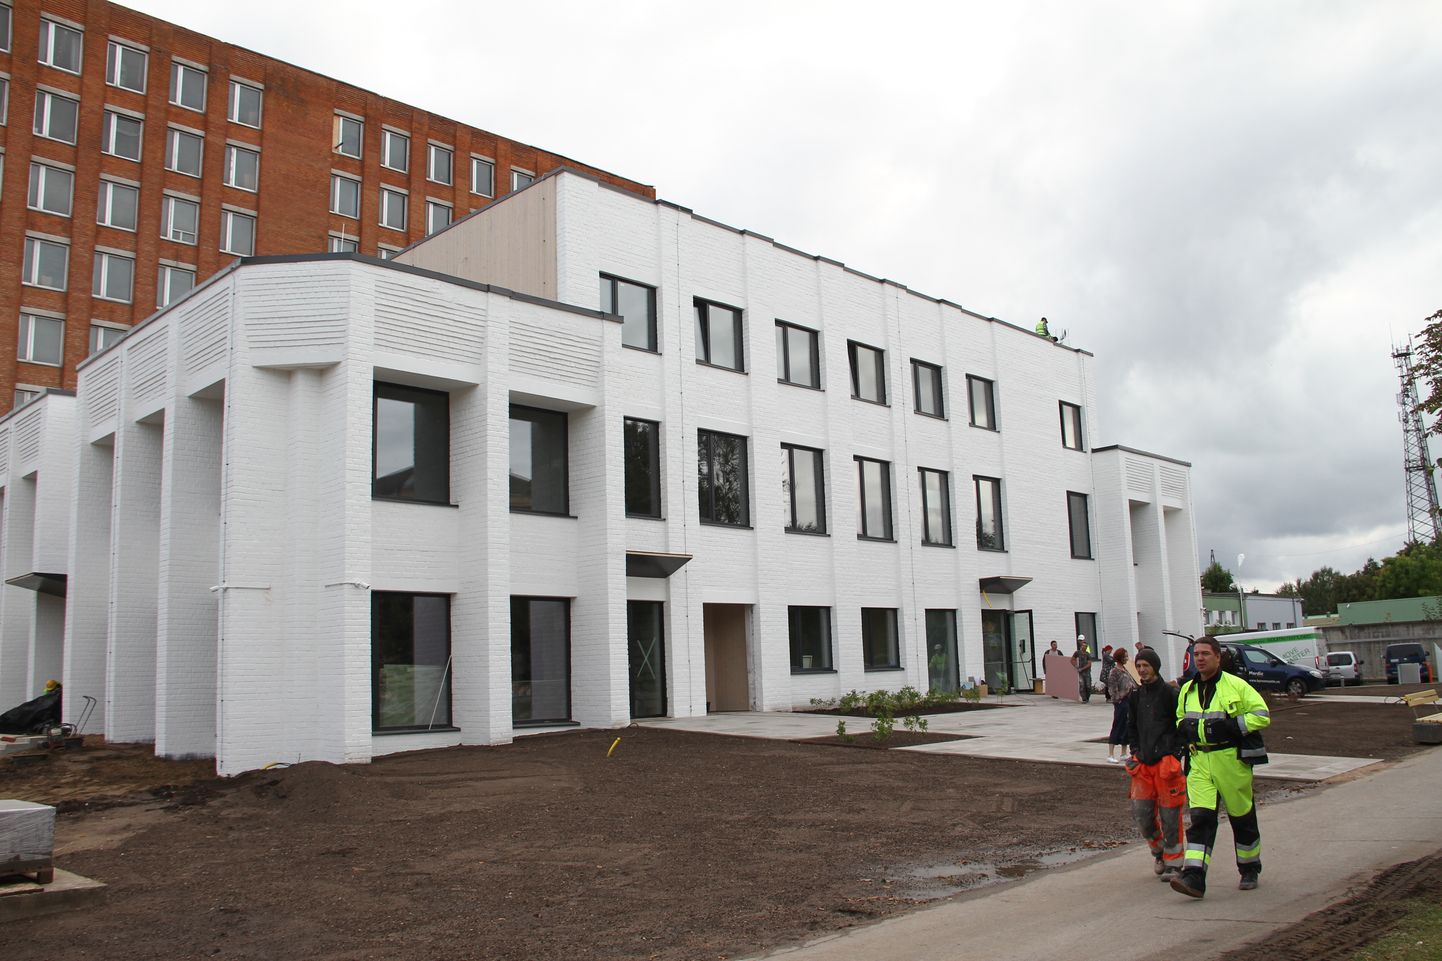 Сентябрь 2019 года, строители заканчивают реконструкцию здания в Нарве, где сейчас работают Дом эстонского языка и мультимедиа-центр Objekt.